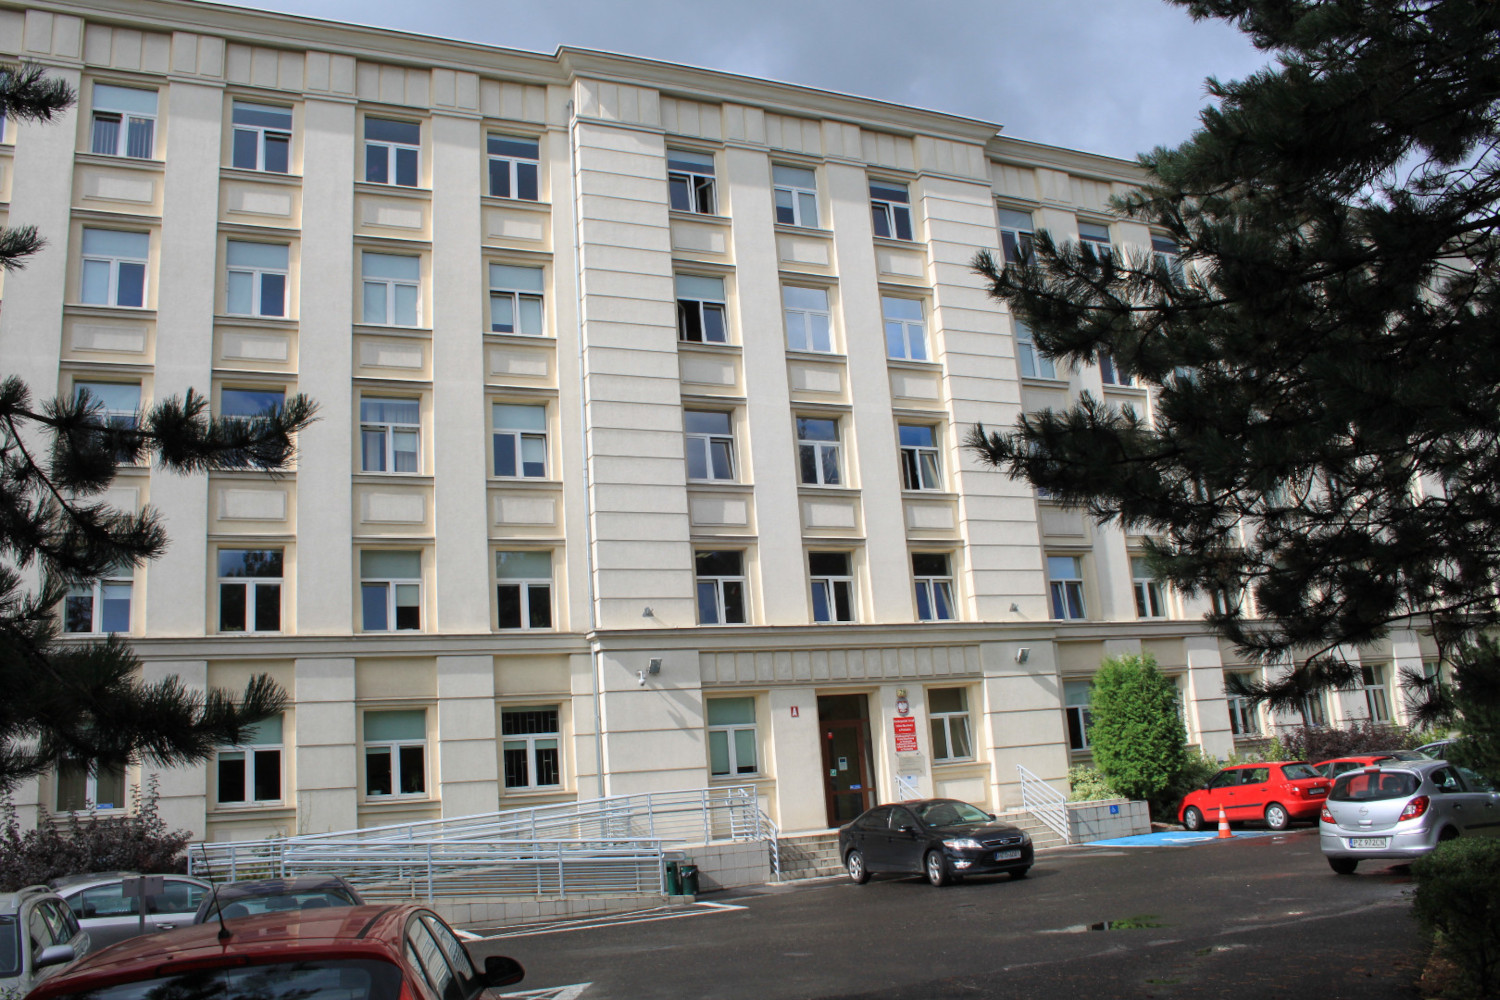 na zdjęciu budynek Wielkopolskiego Urzędu Celno-Skarbowego, budynek 4 piętrowy, elewacja w kolorze beżowym.